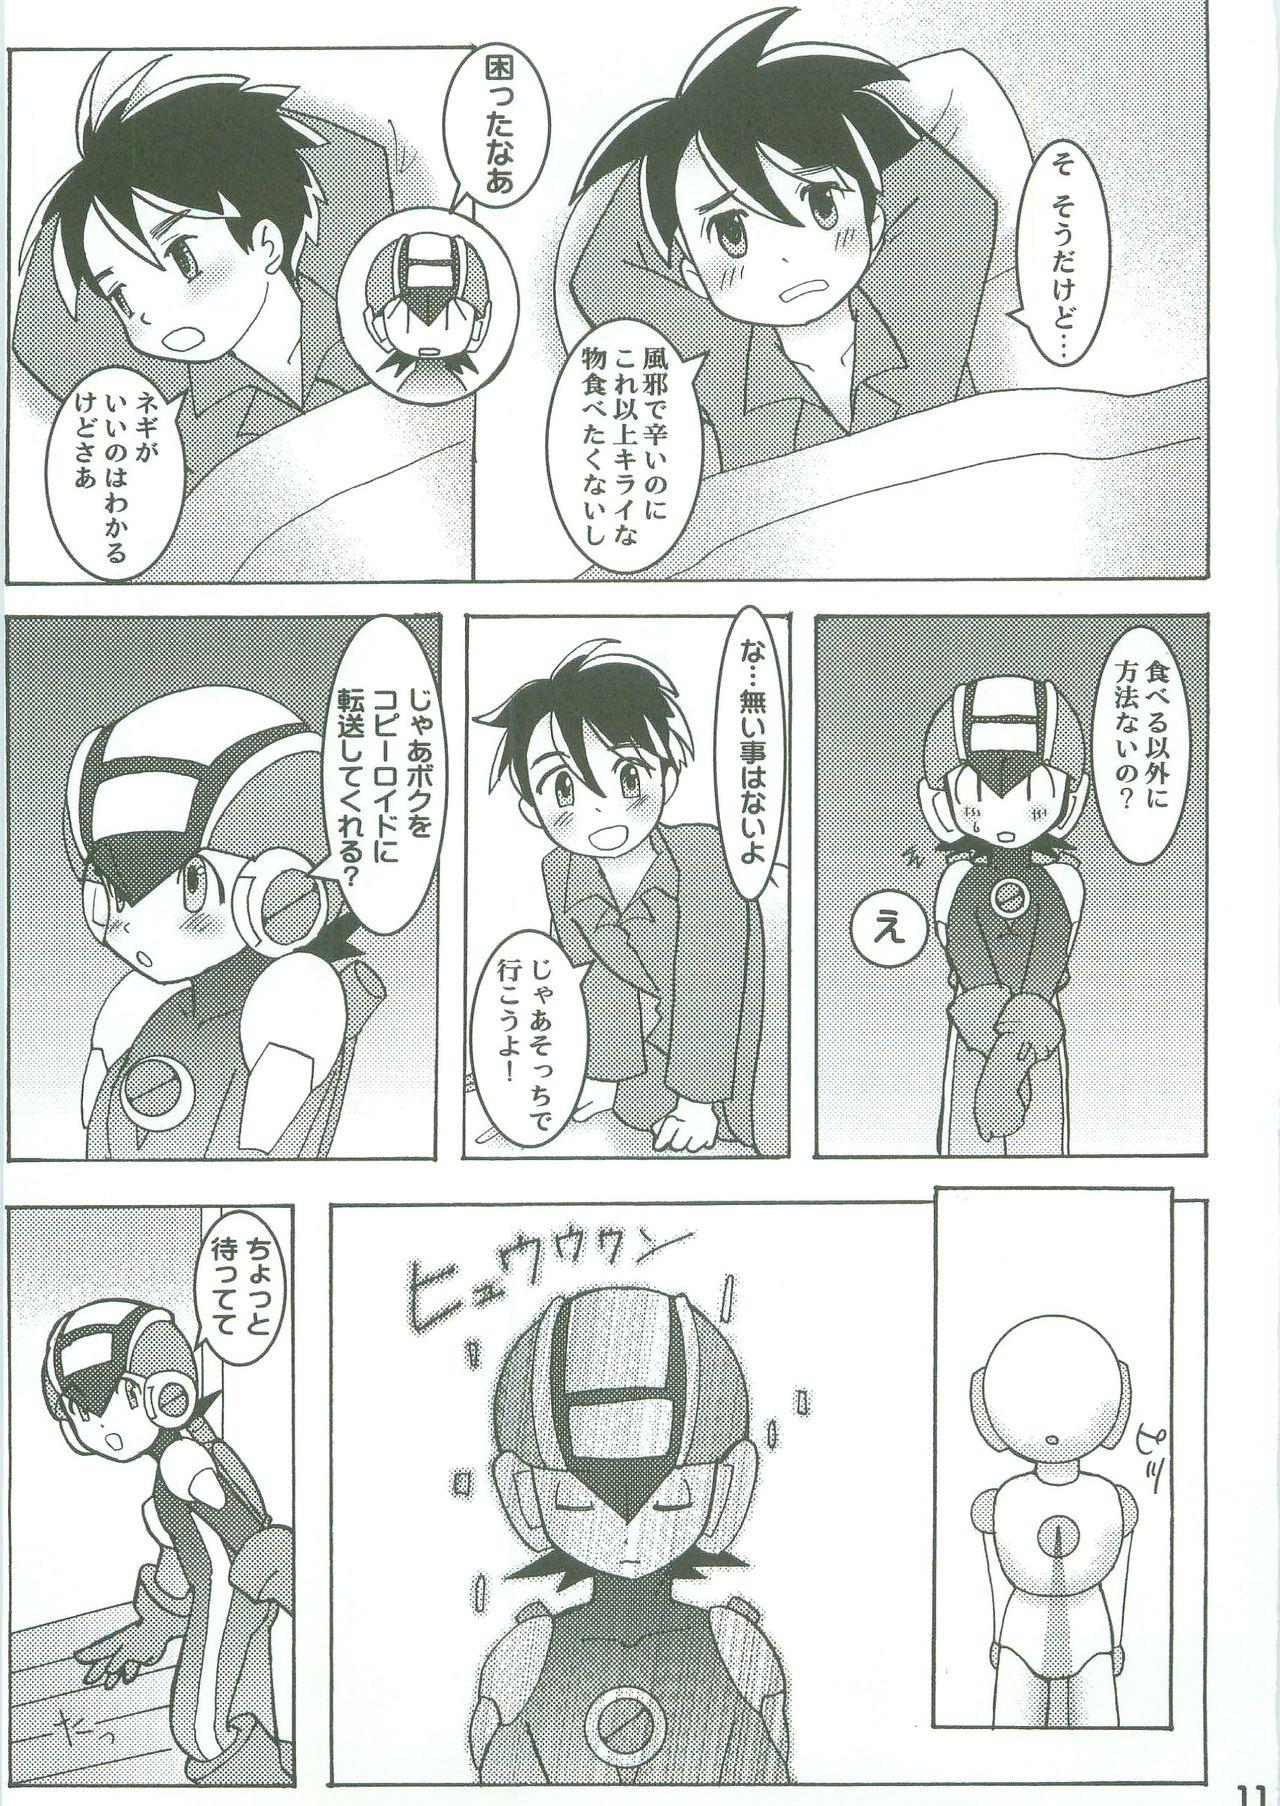 Pounded Kamonegi! (Rockman.EXE)/abemochi - Megaman battle network | rockman.exe Amateur Cumshots - Page 9